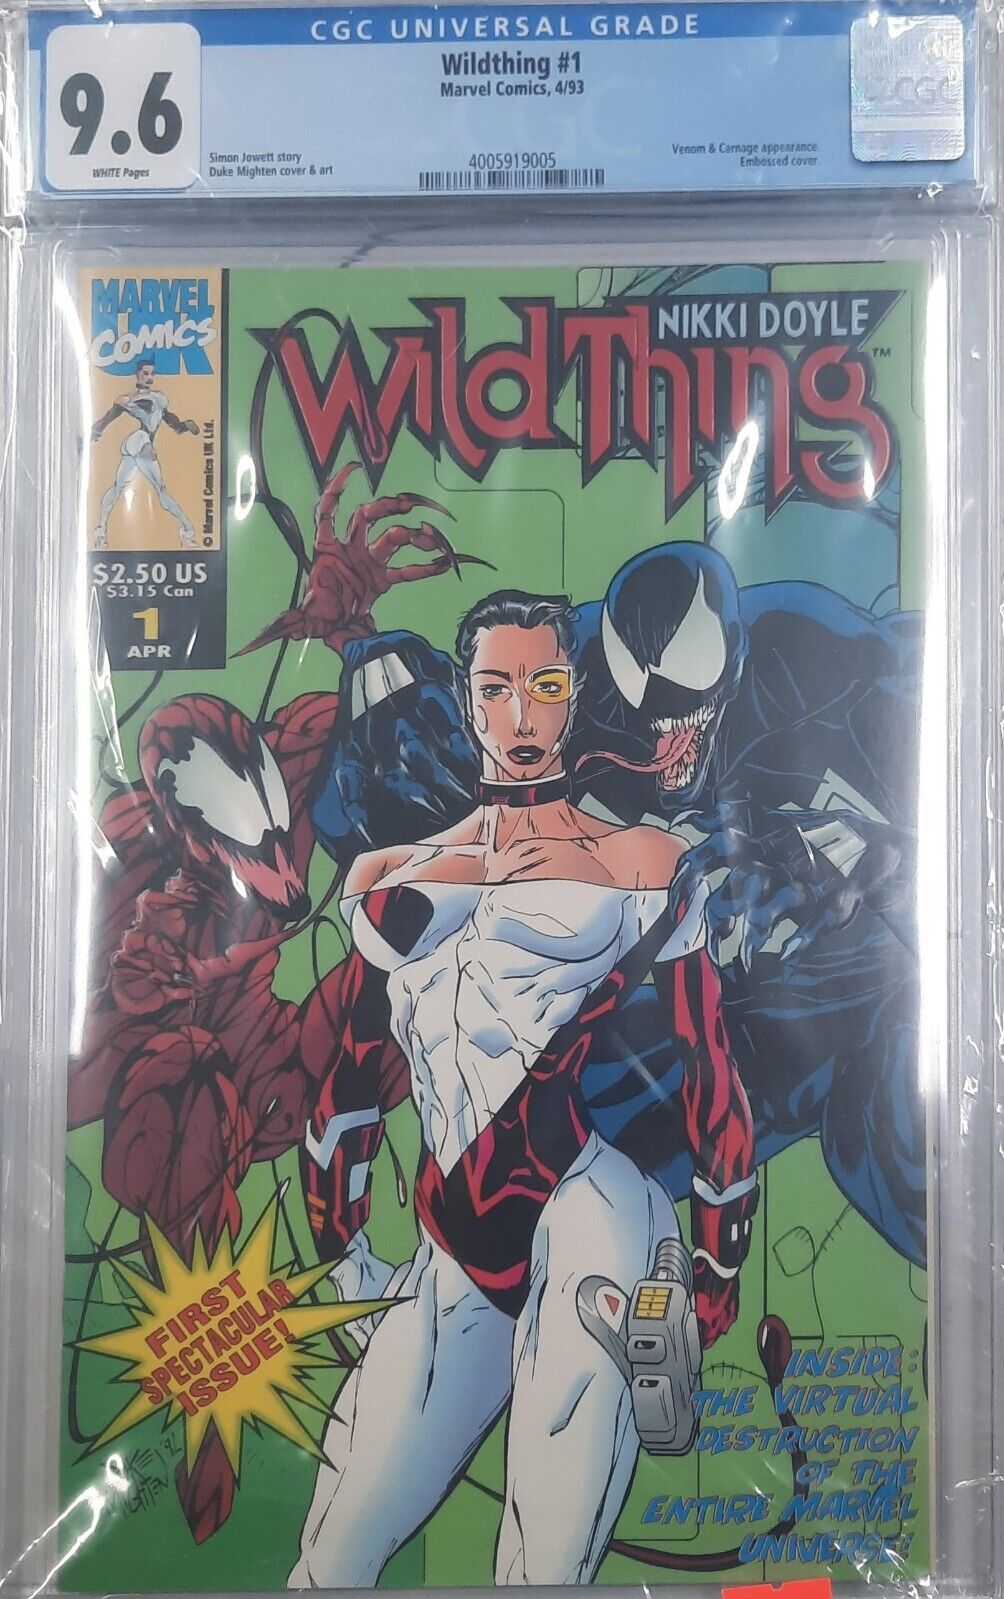 CGC 9.6 Wildthing #1 Marvel Comics, 4/93